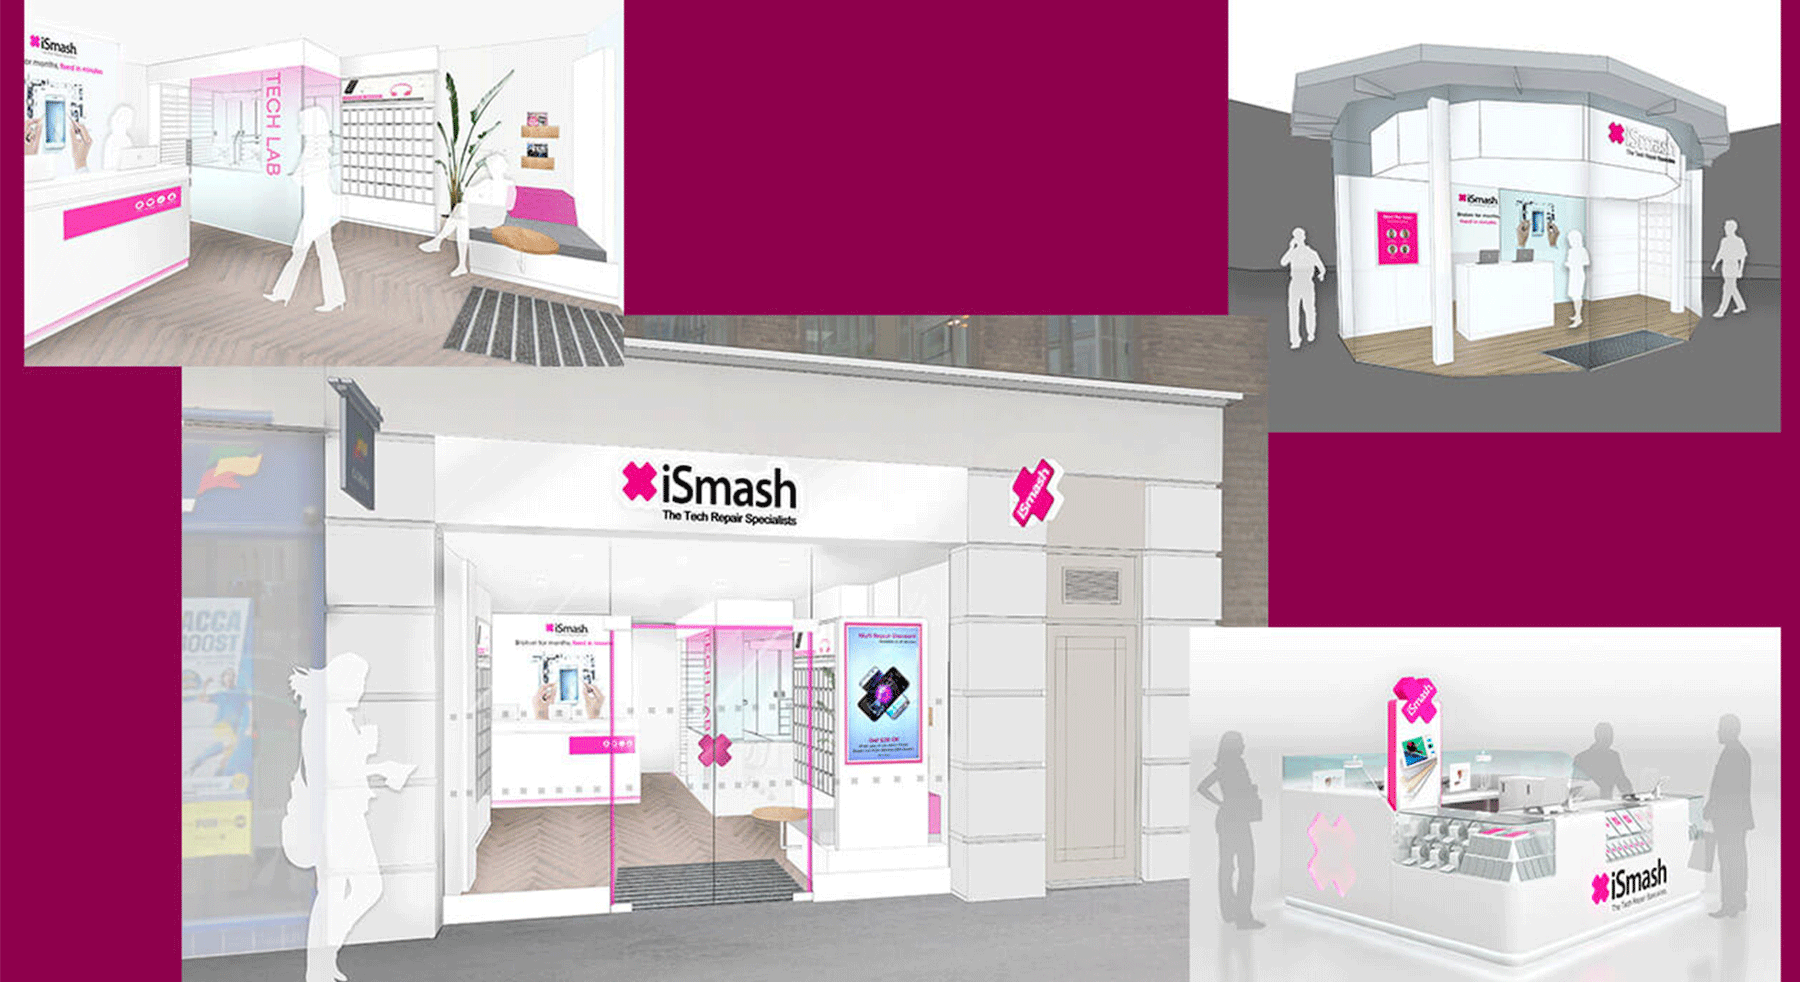 UK iSmash Phone Repair Express Store Design Concept - M2 Retail